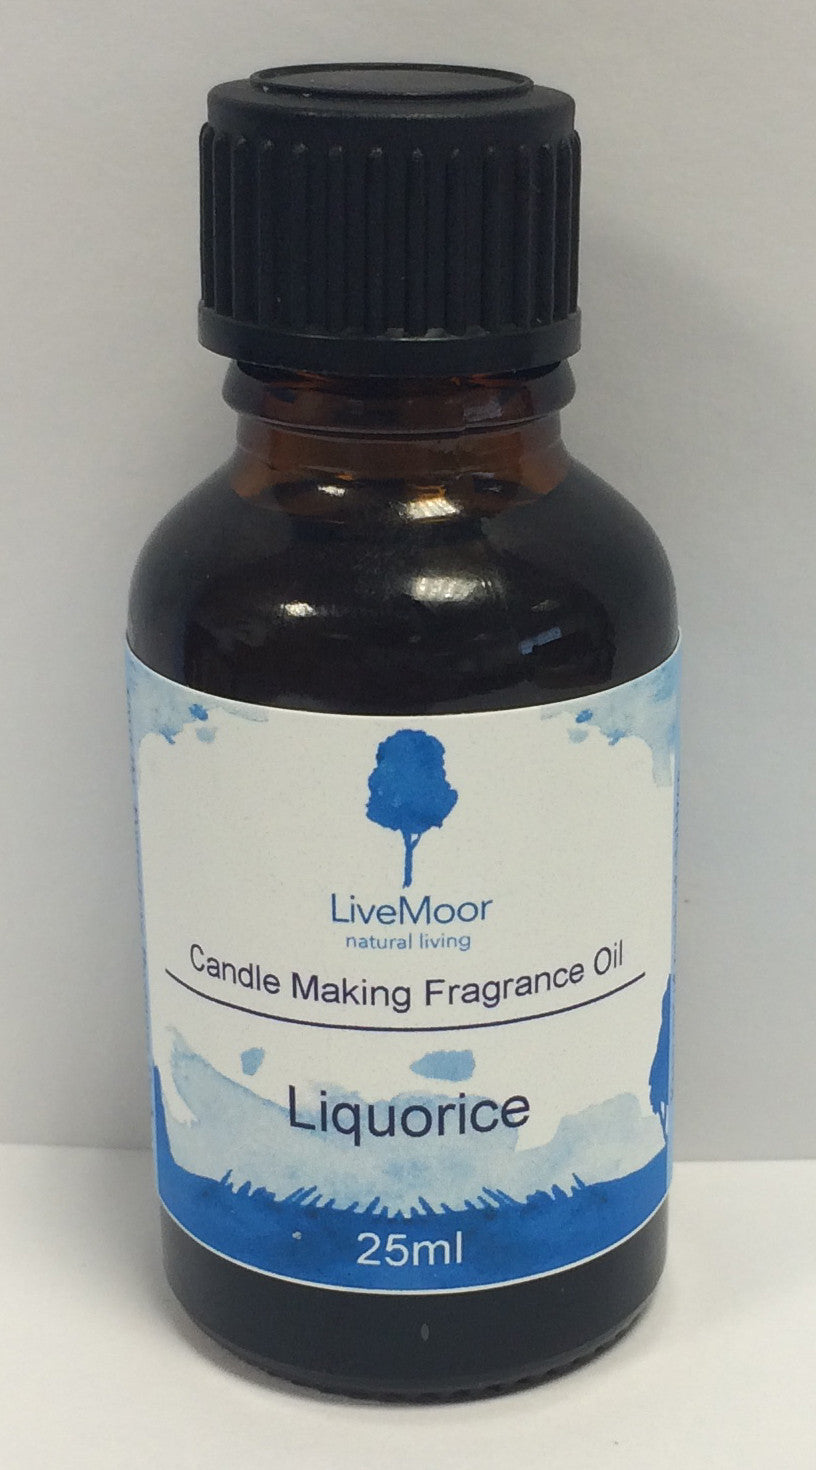 Aceite aromático LiveMoor - Regaliz - 25 ml